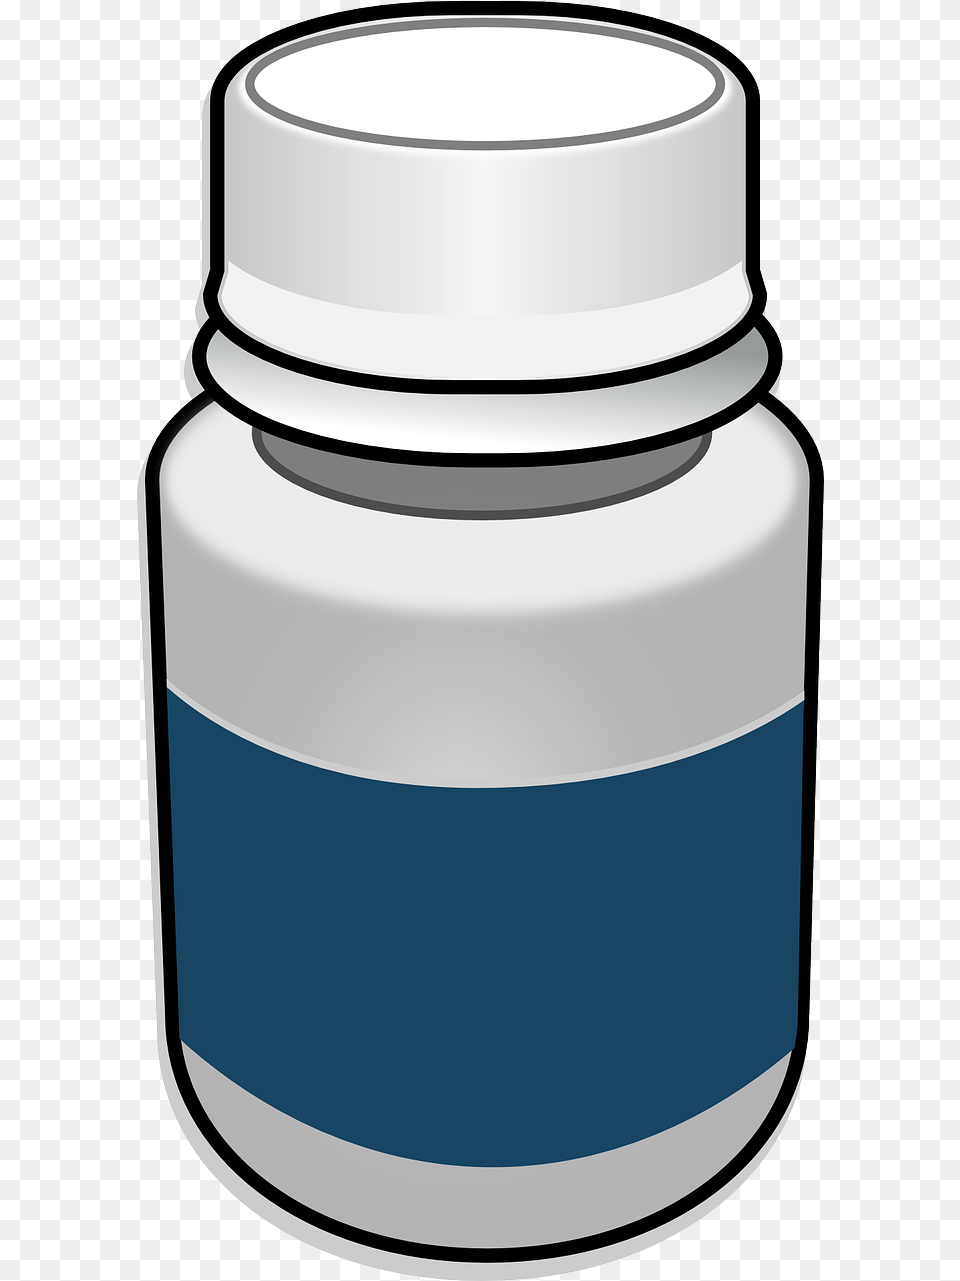 Background Pill Bottle Background Pill Bottle Clip Art, Jar, Ink Bottle Free Transparent Png